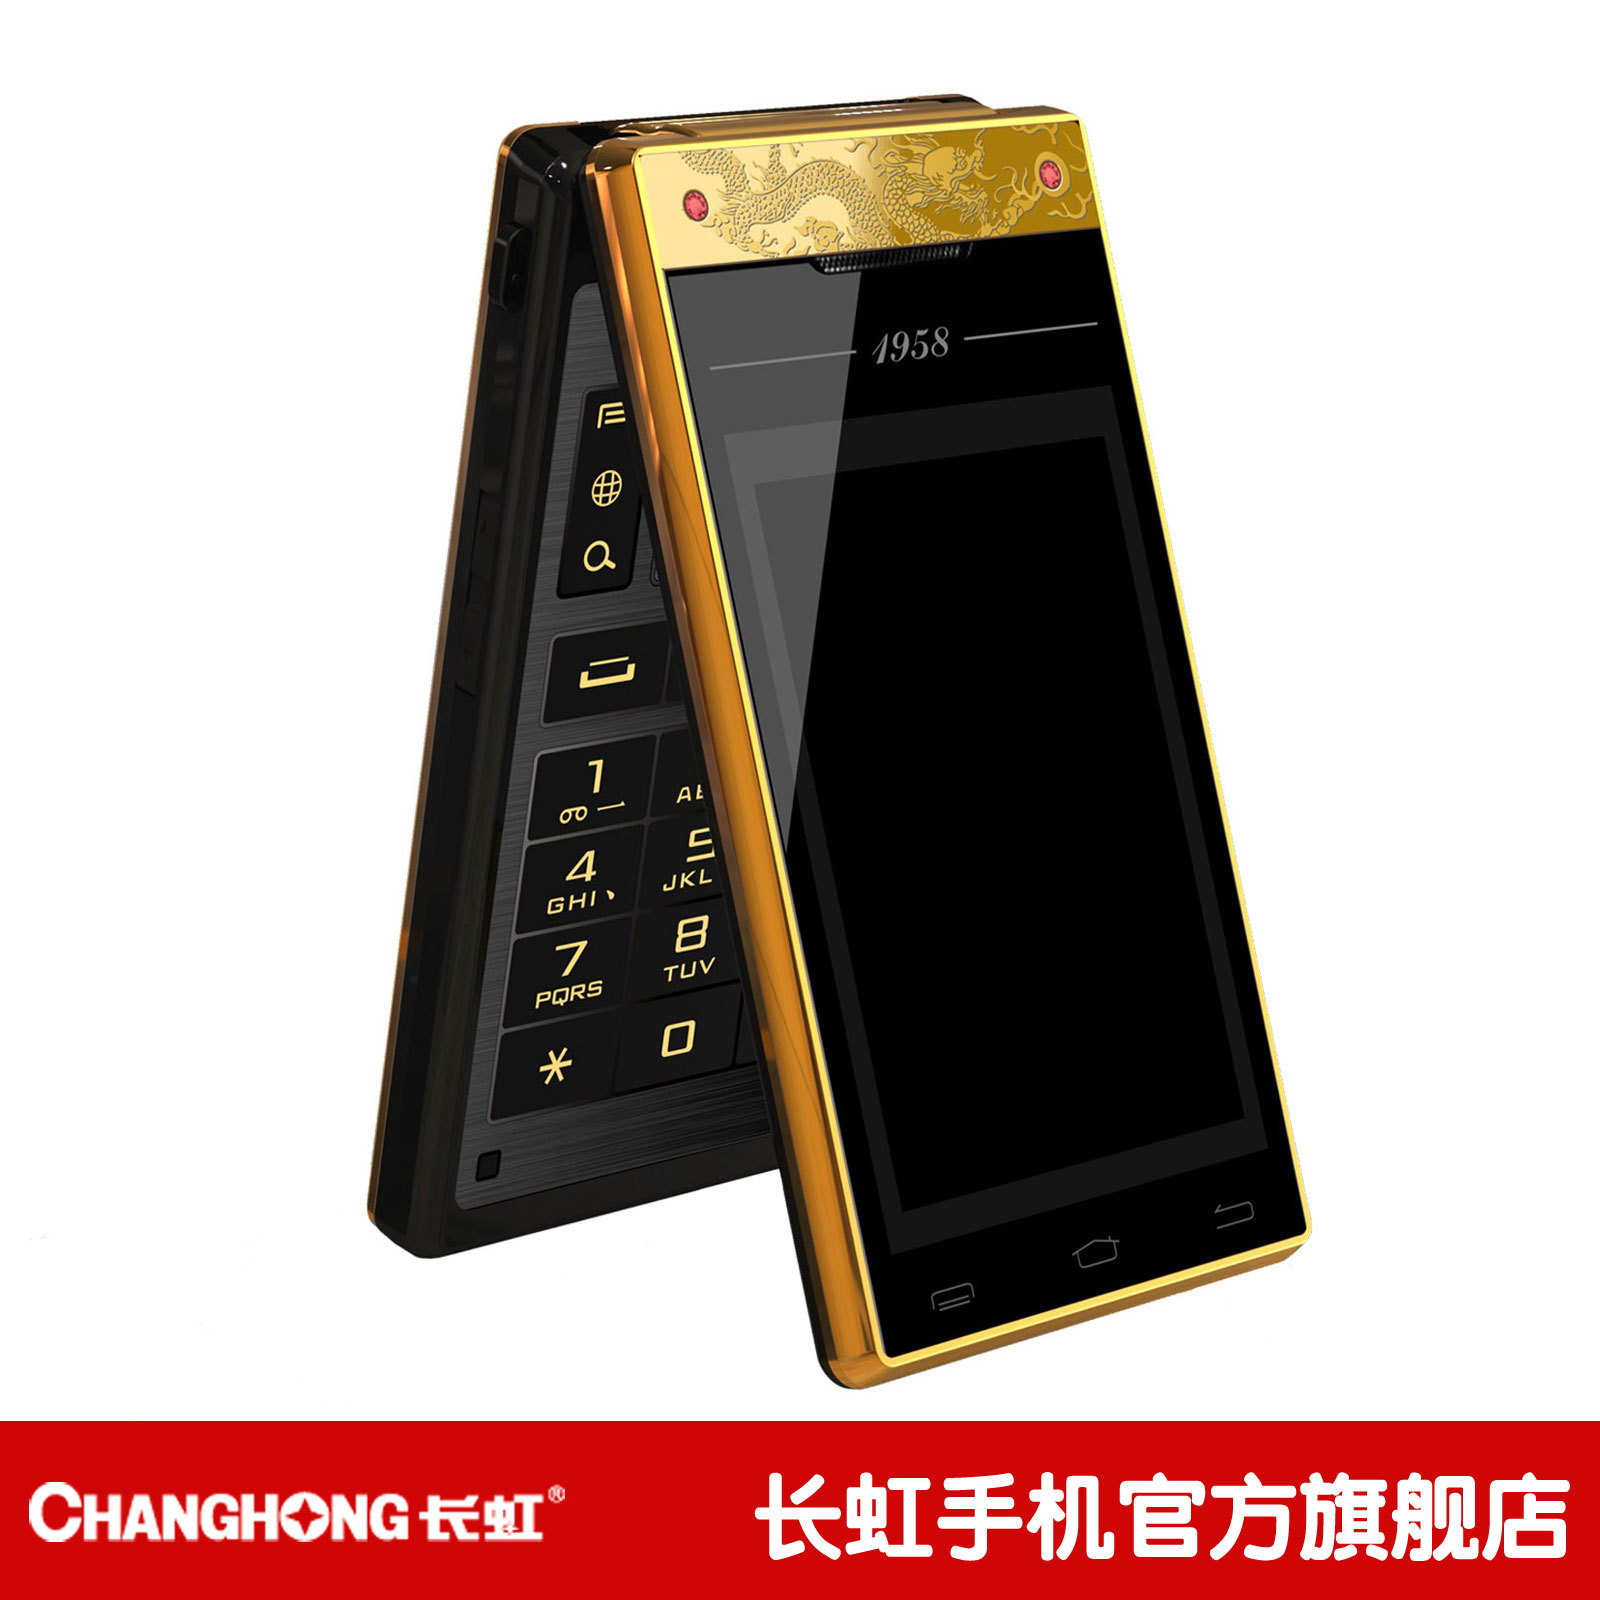 Changhong/长虹 A999黄金双屏安卓智能商务手机 黄金龙纹手机